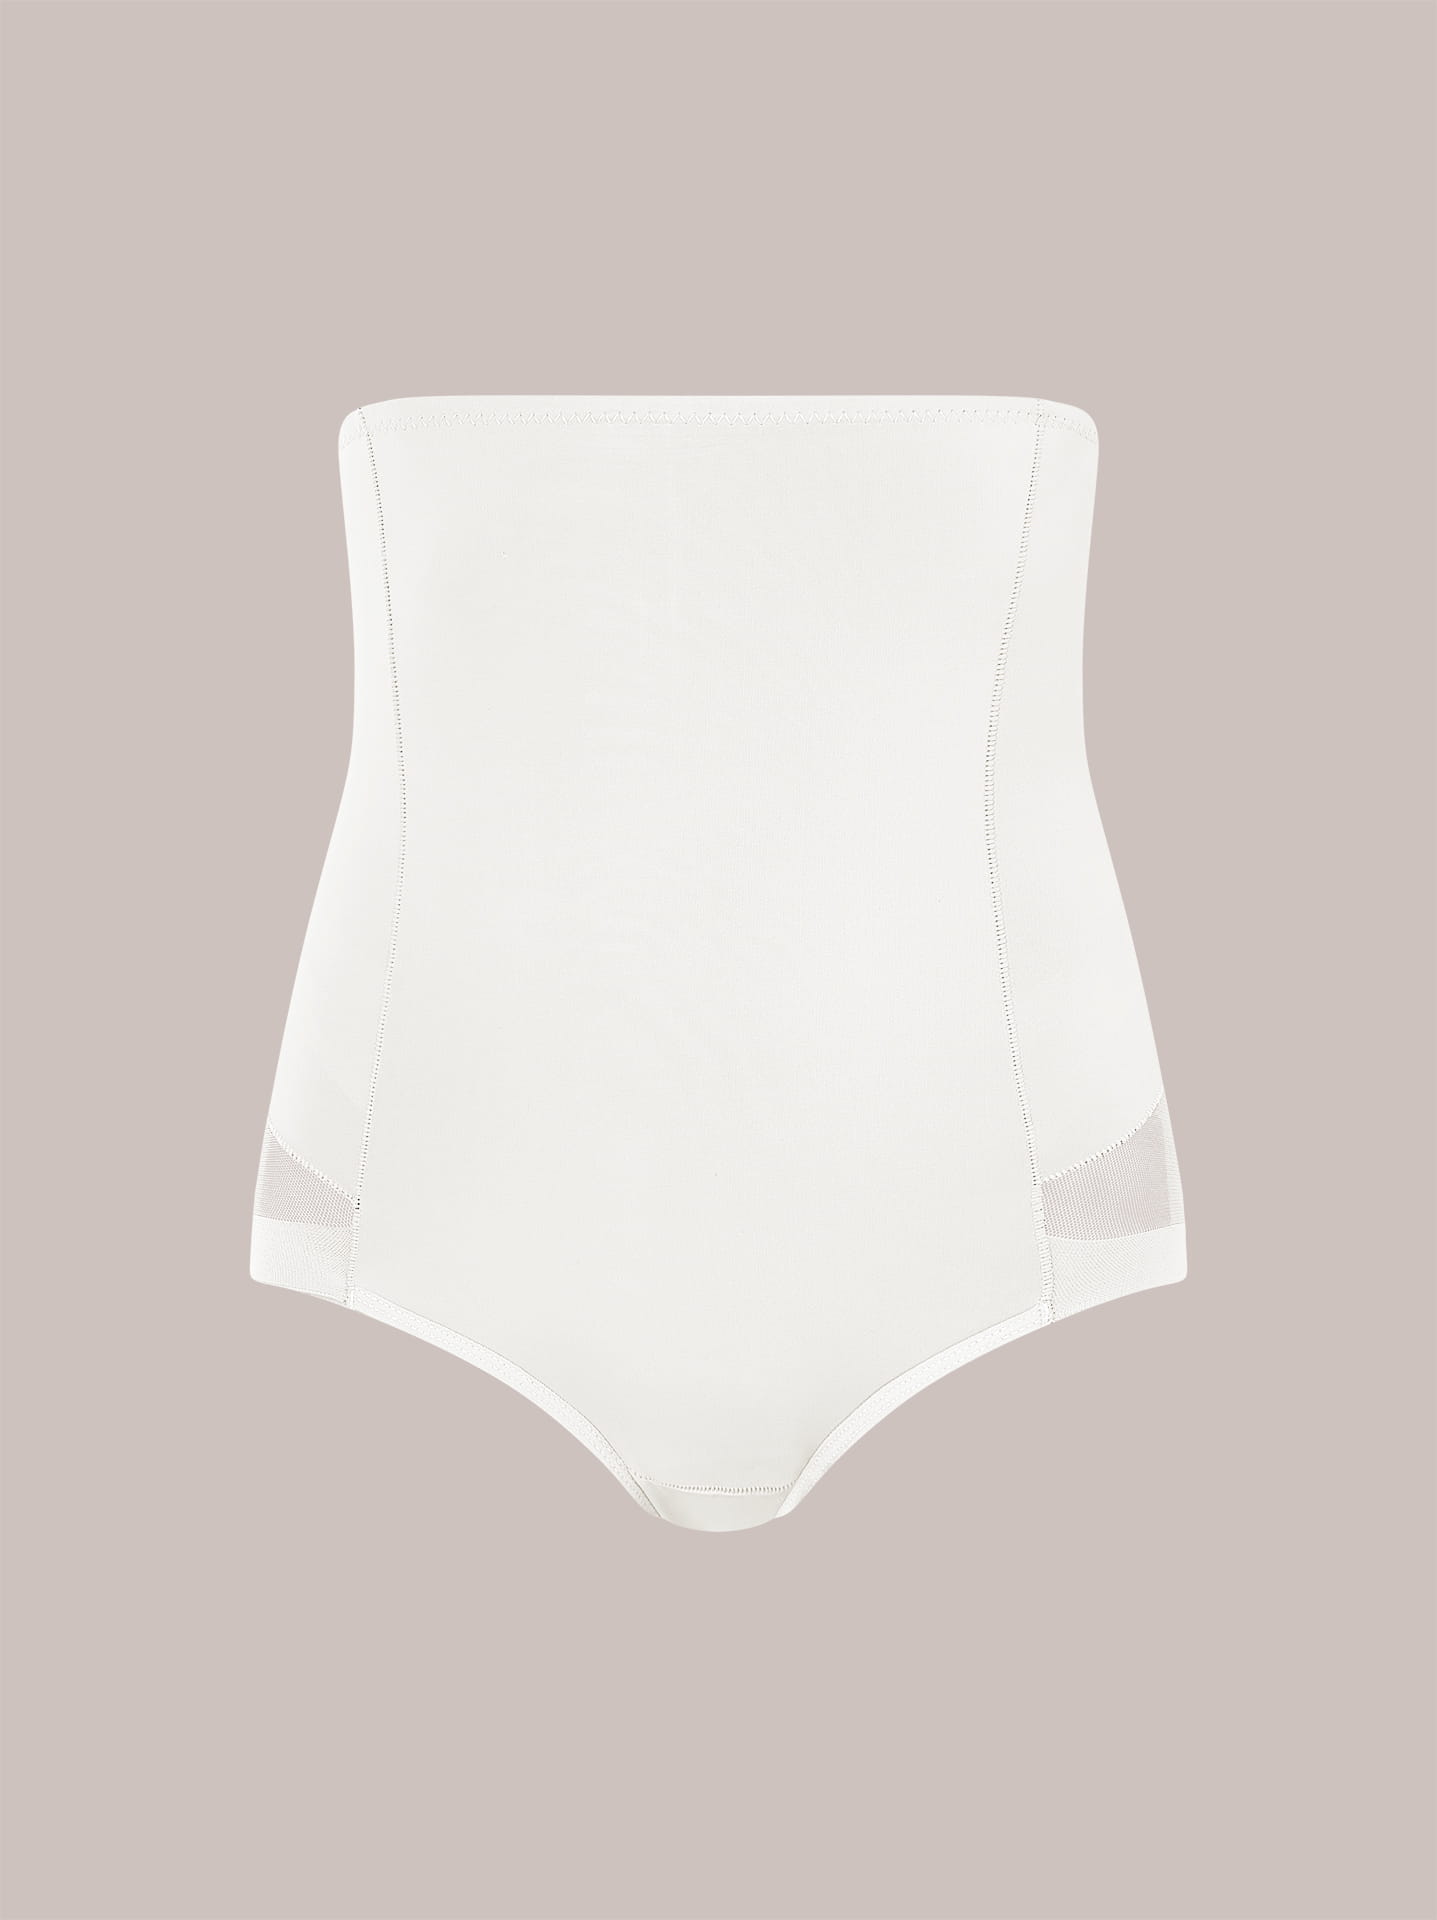 Fit control underwear in white, 5.99€